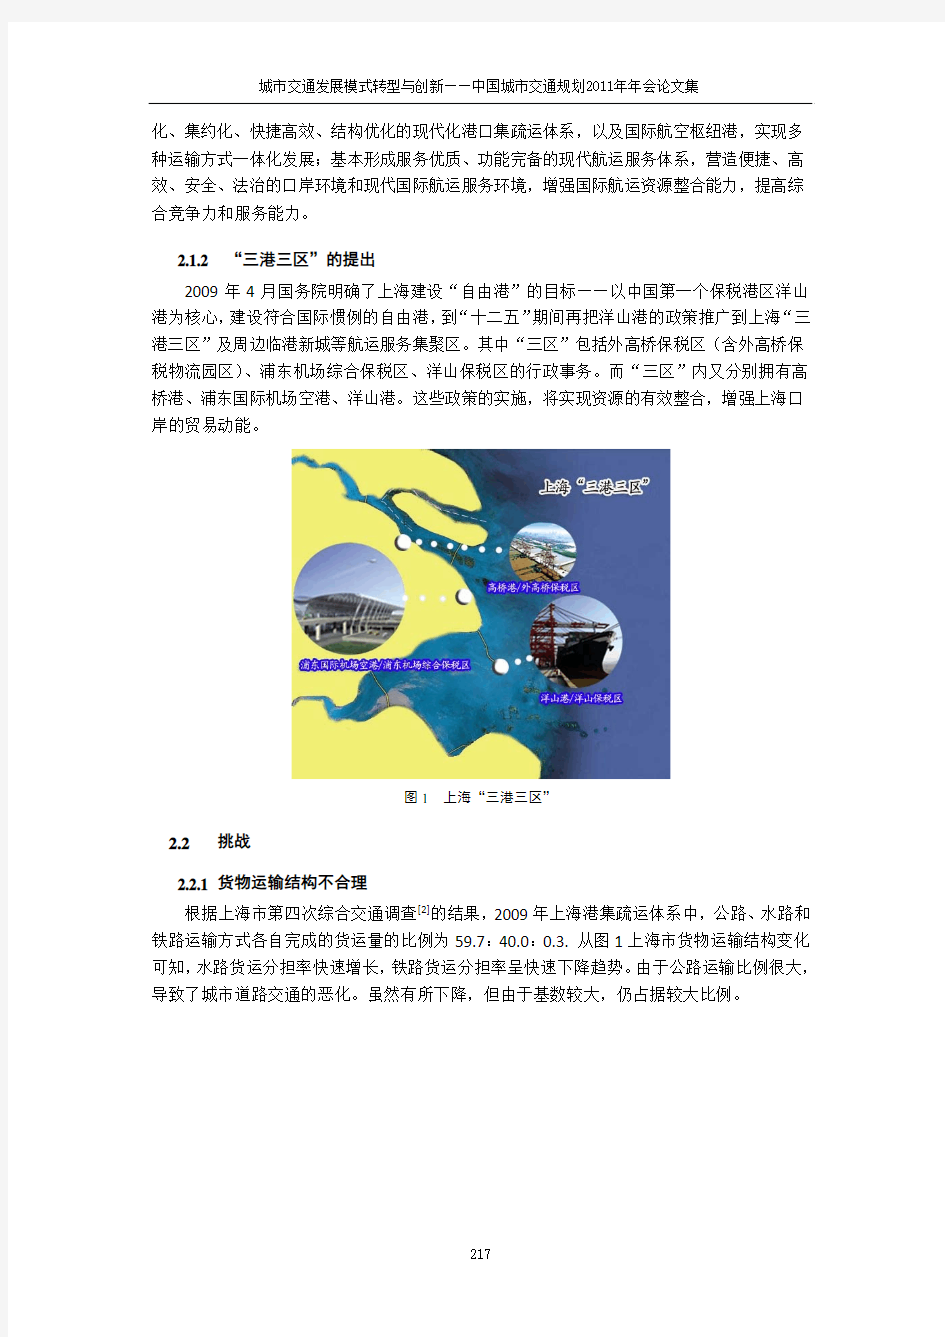 上海市货运交通发展形势及对策研究